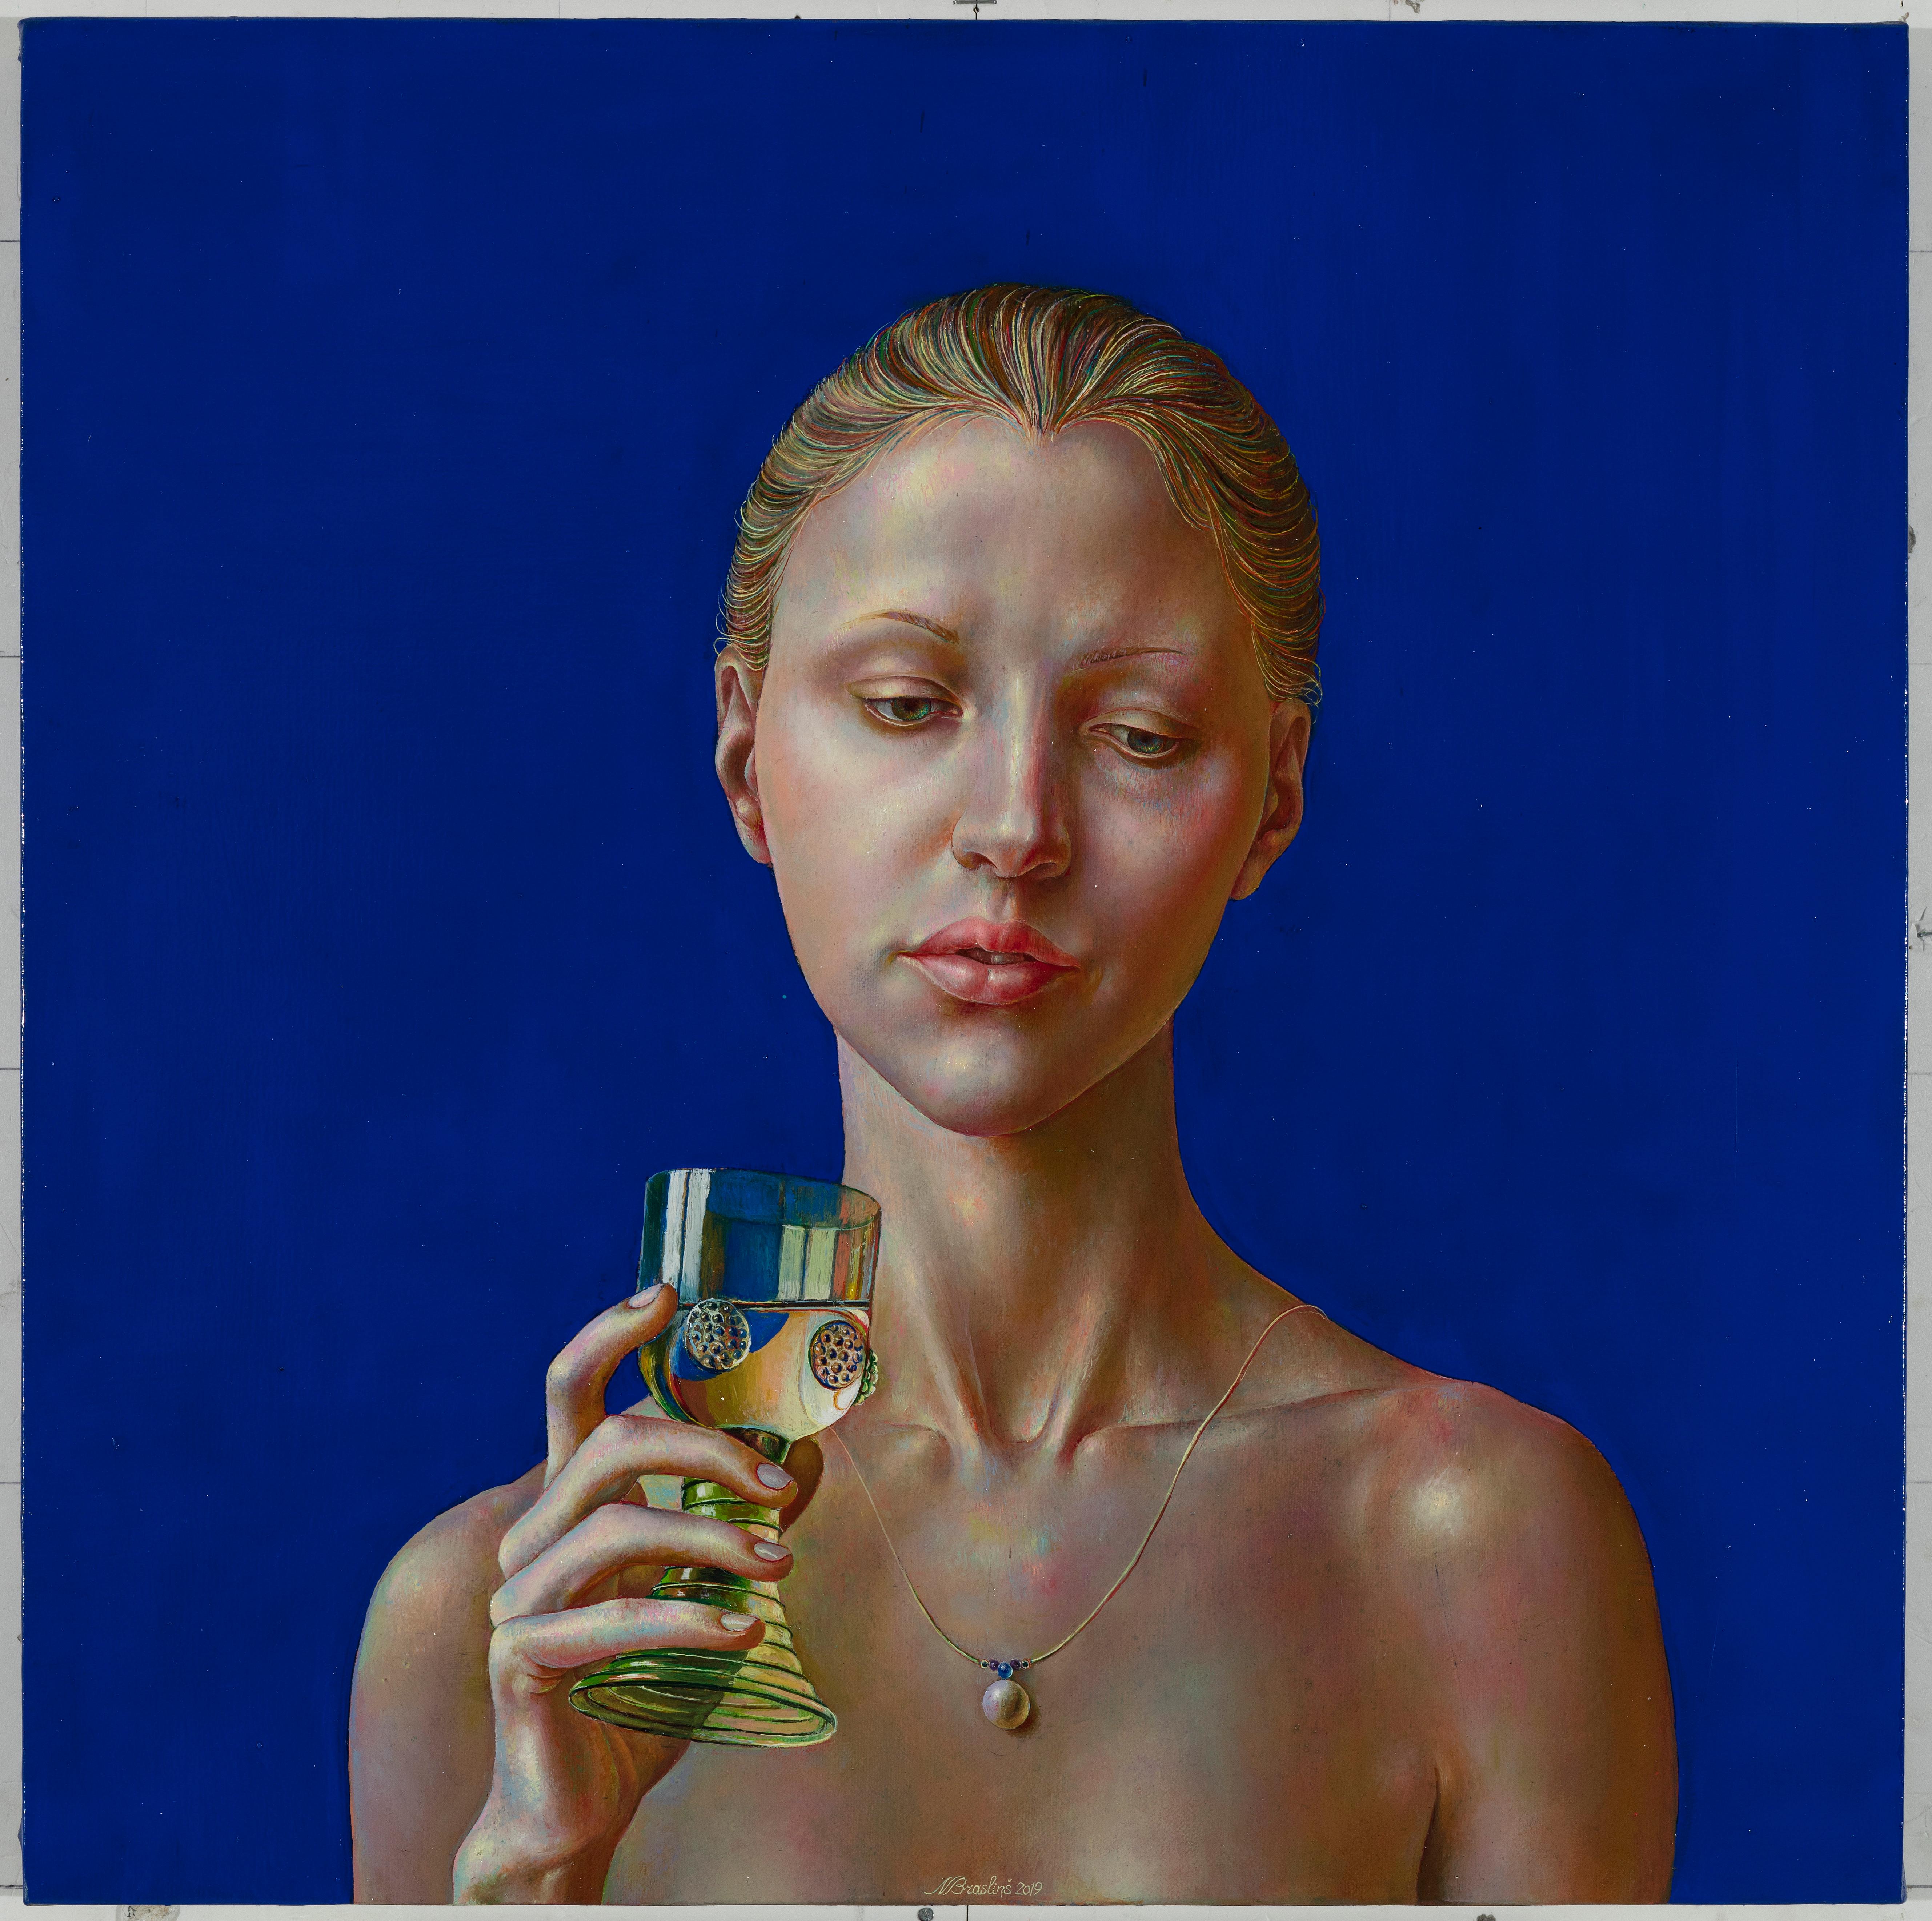 Normunds Braslinsh Nude Painting – Frau mit einem Glas.2019. Öl auf Leinwand, 45x45 cm, Öl